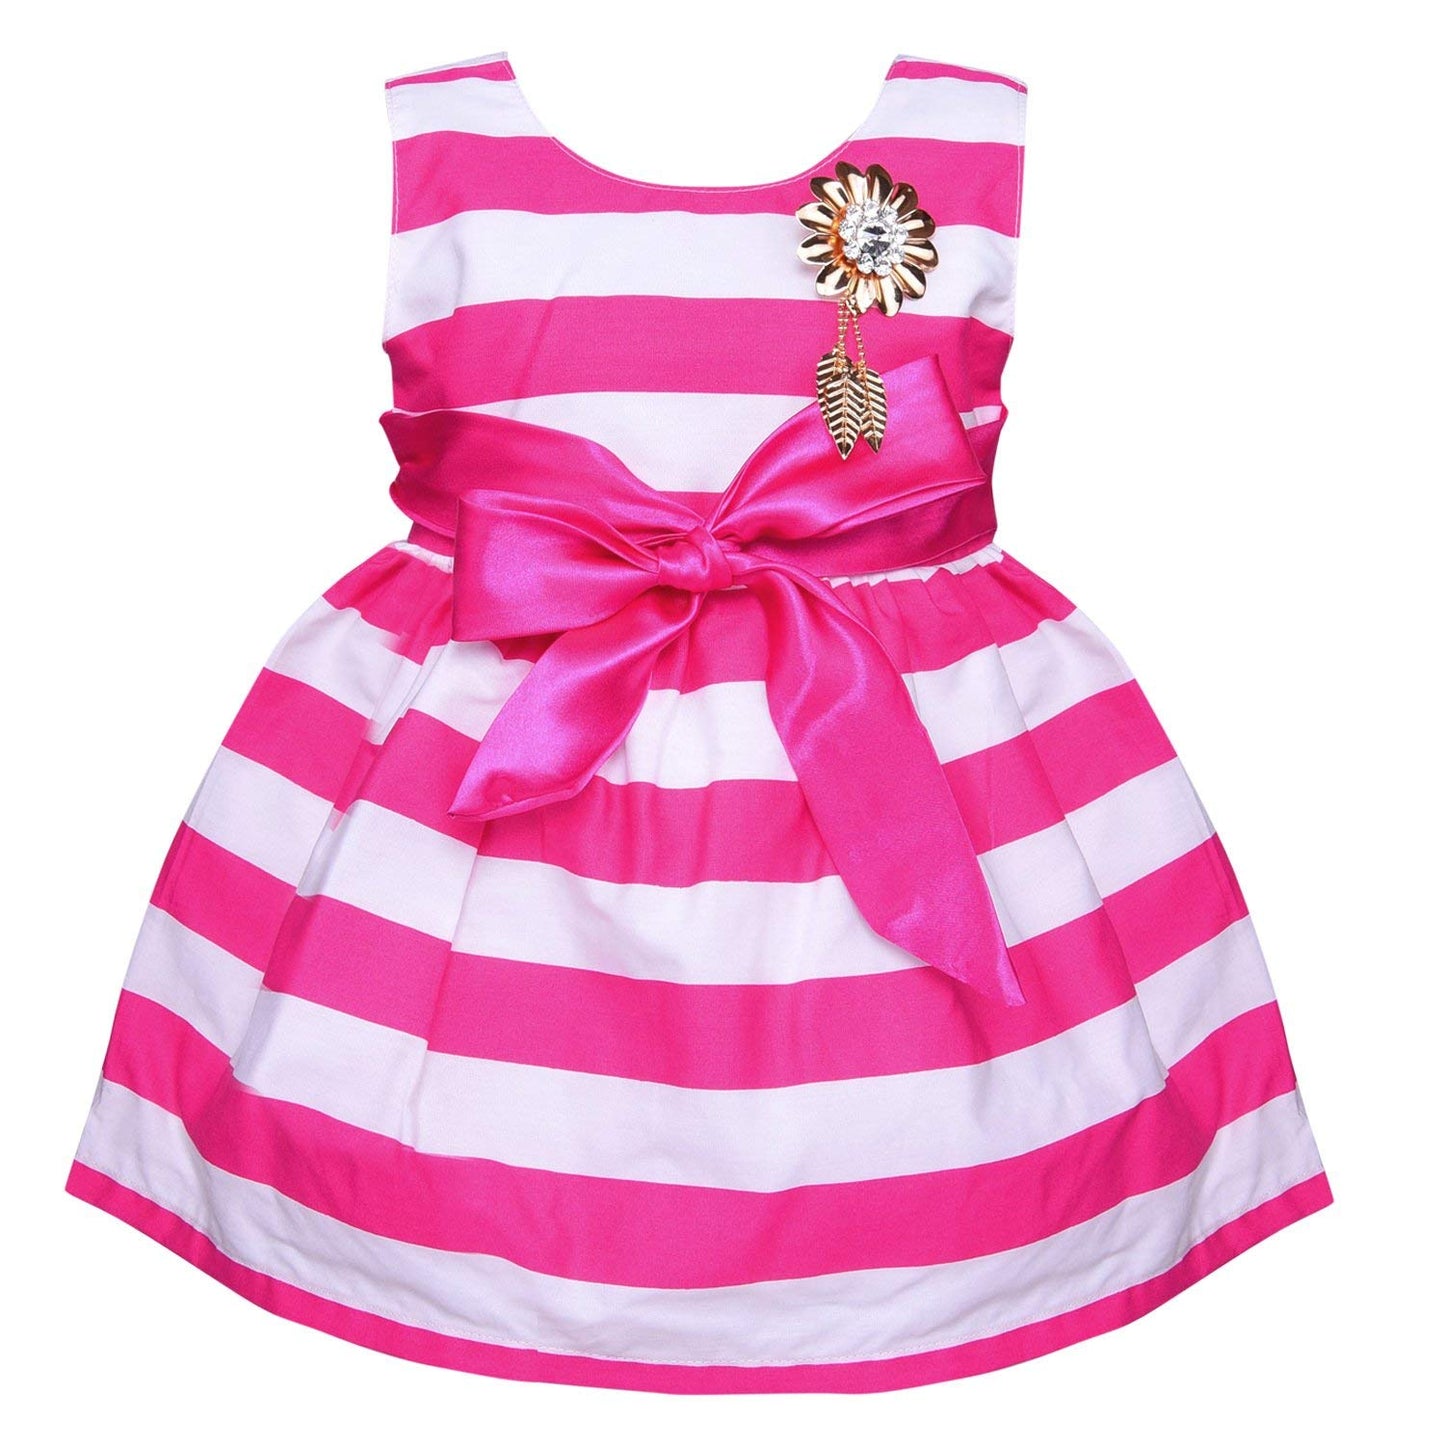 Baby Girls Party wear Frock Dress ctn265pnk - Wish Karo Cotton Wear - frocks Cotton Wear - baby dress